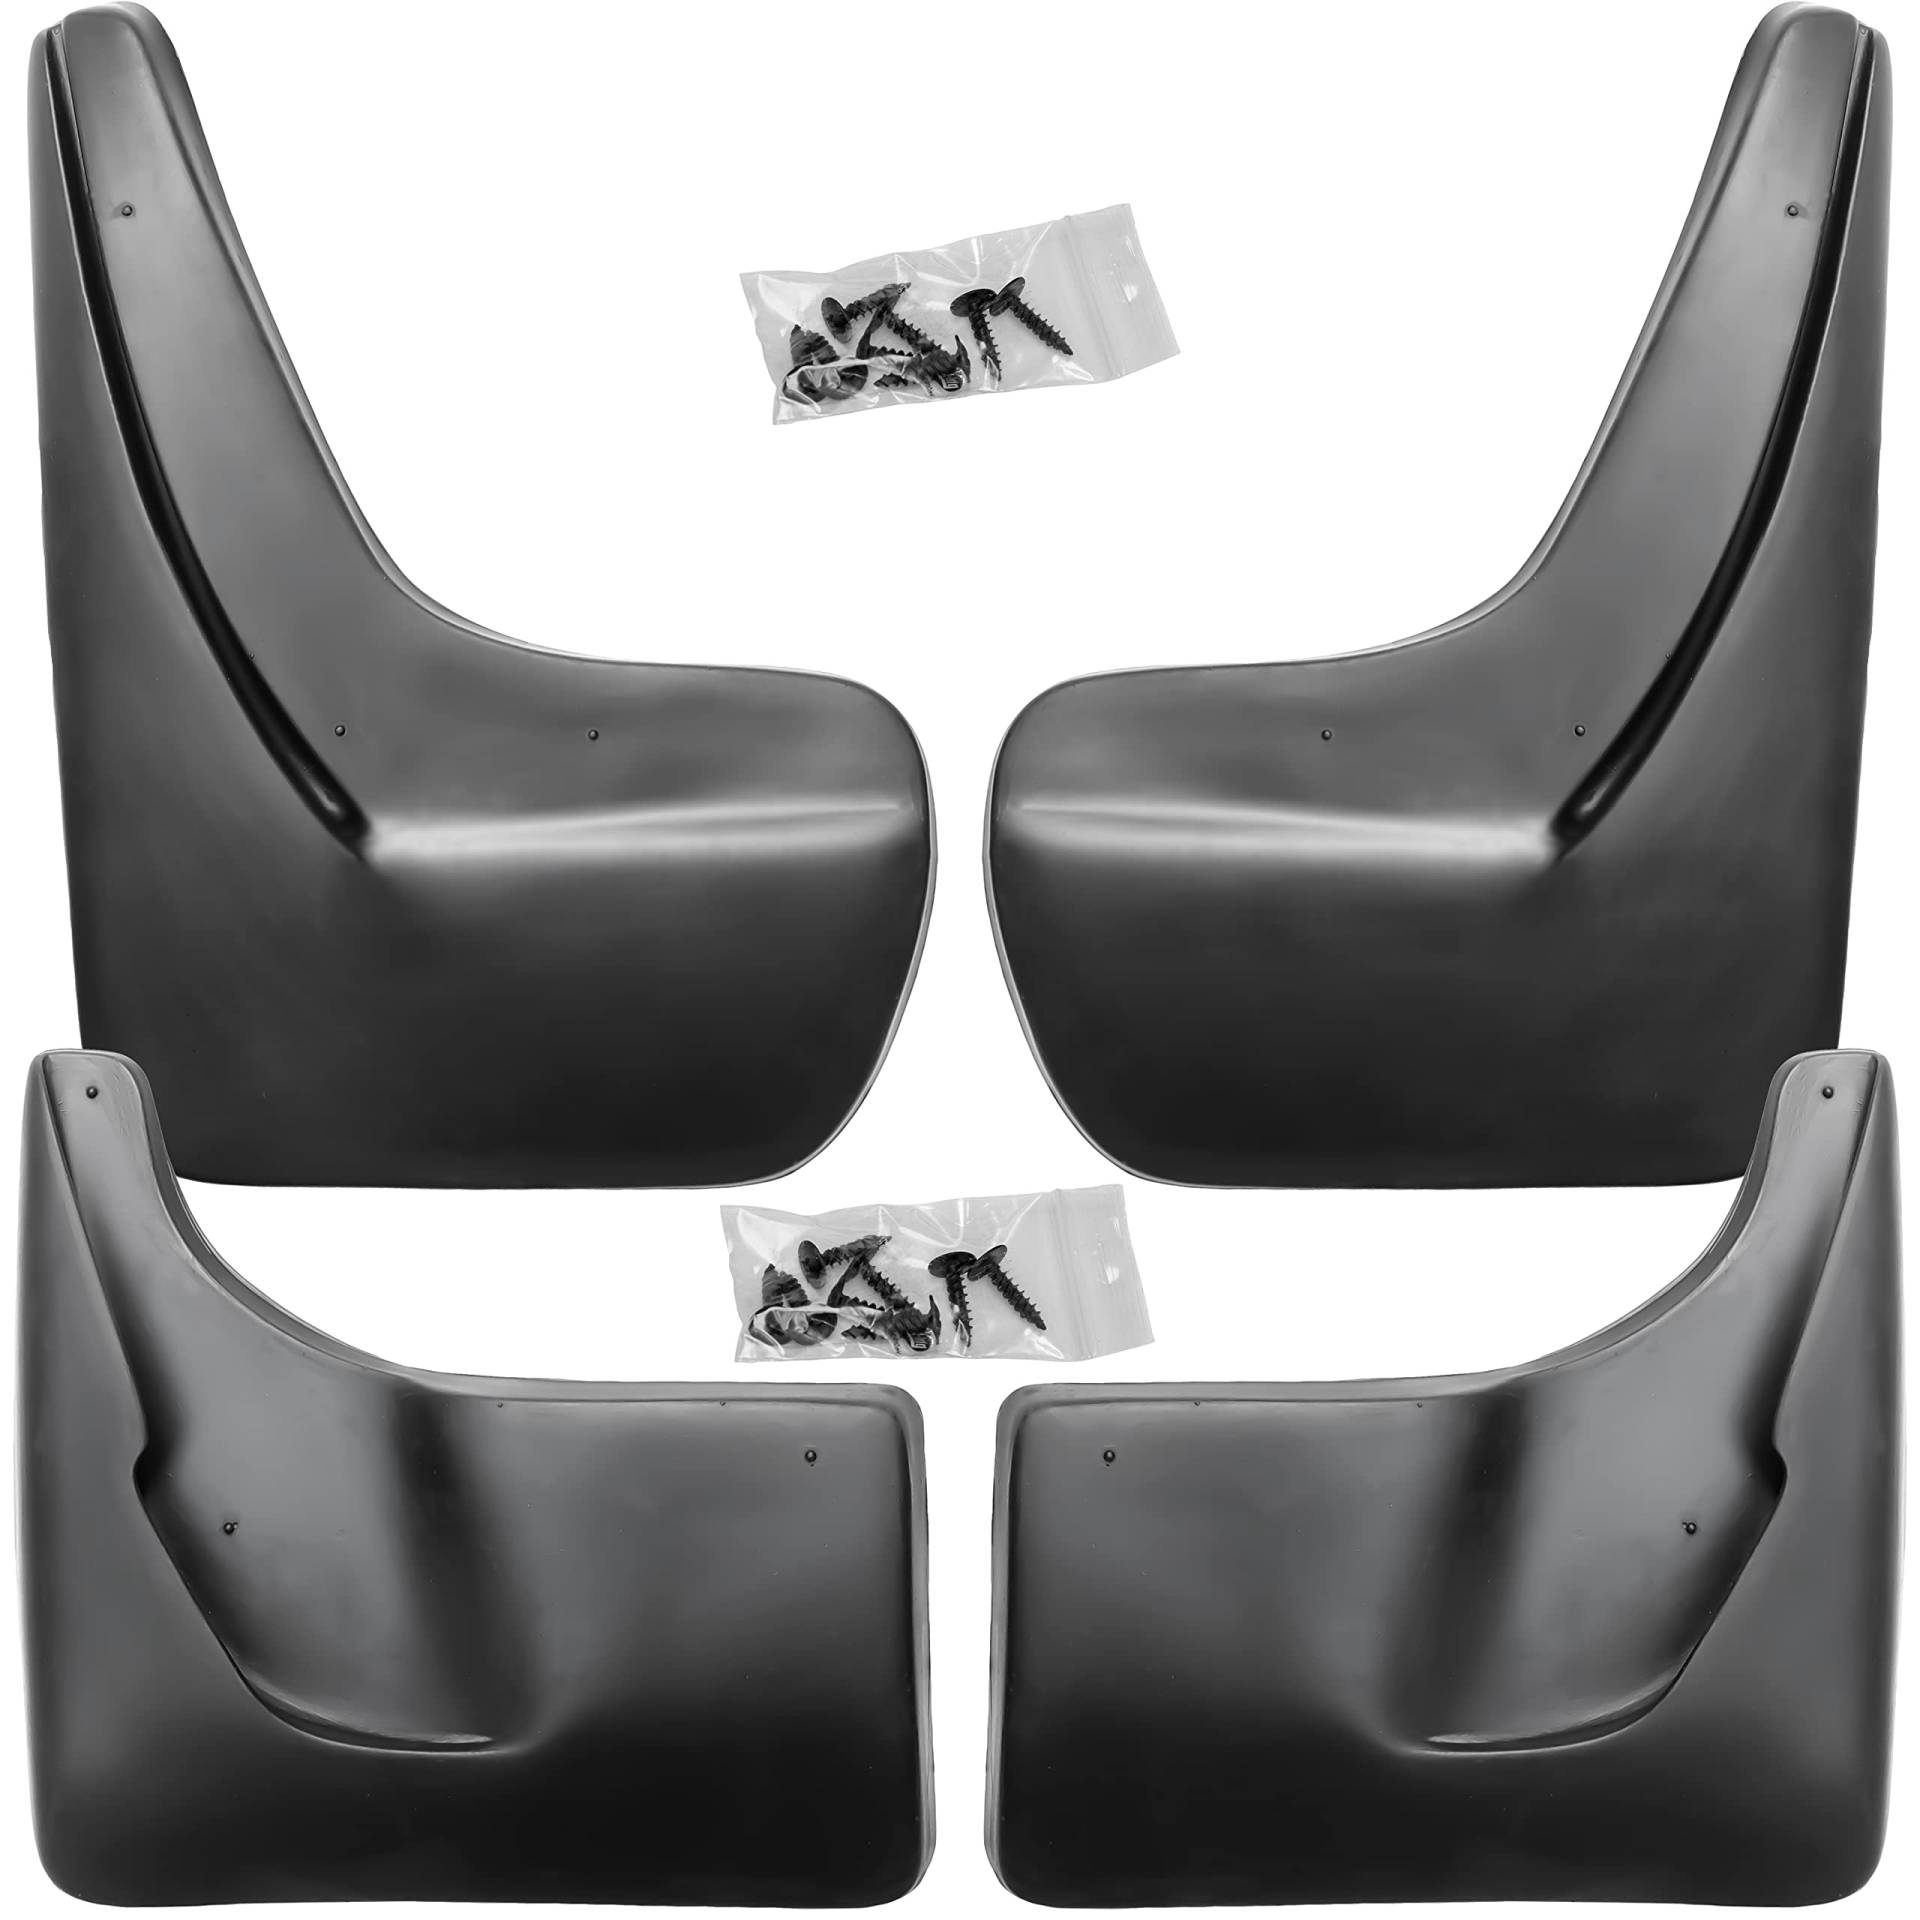 Recambo Schmutzfänger Set vorne + hinten kompatibel für Opel Zafira C Tourer | BJ 2011-2019 | passgenau von Recambo